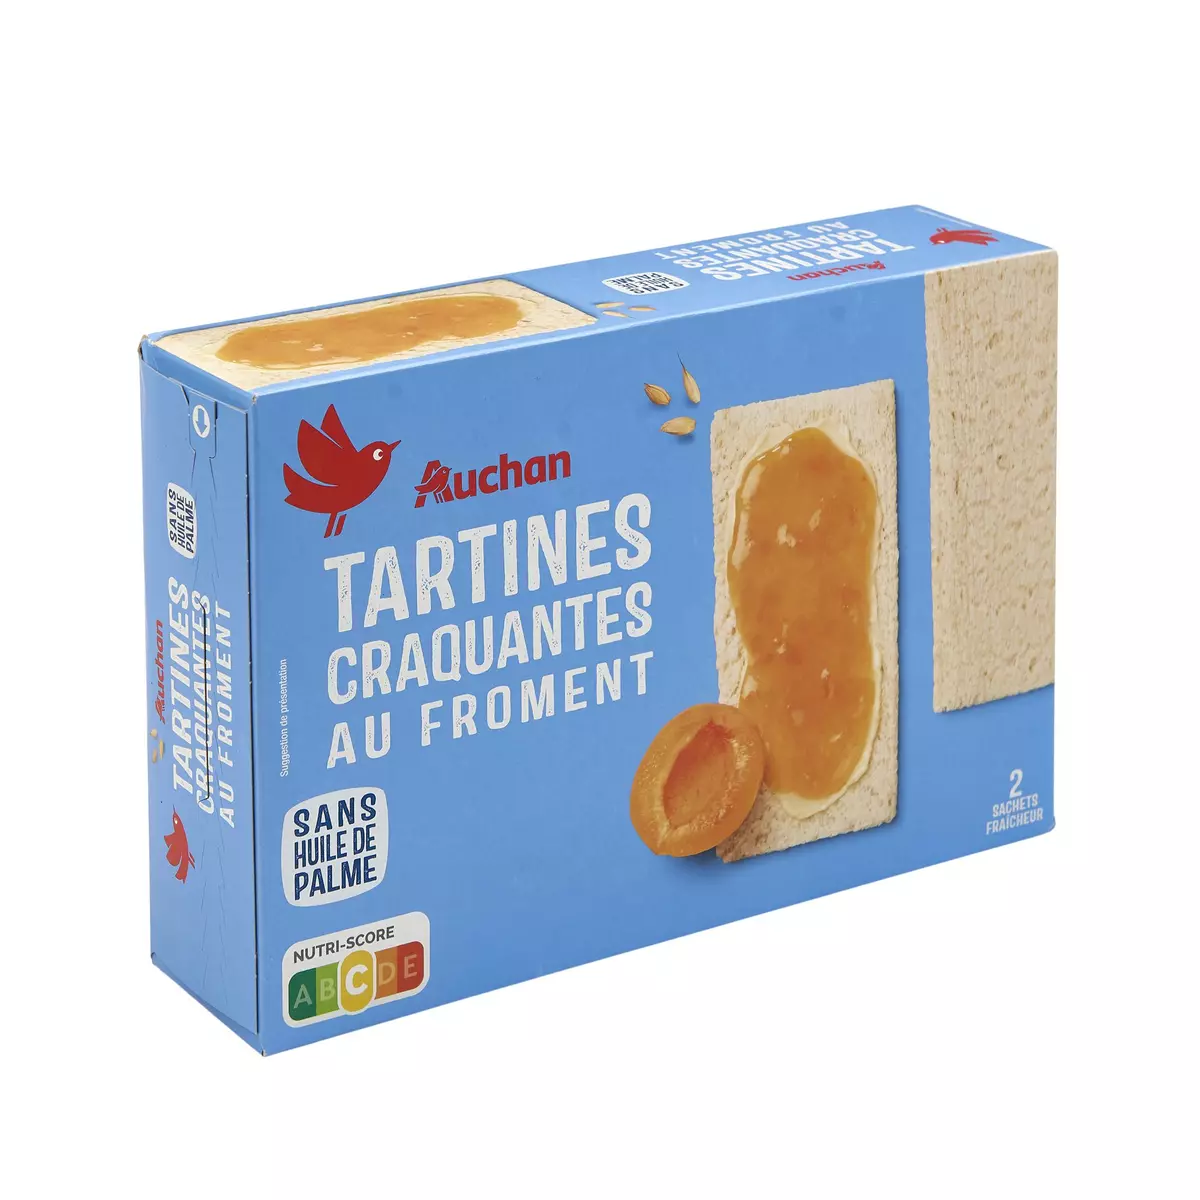 AUCHAN Tartines craquantes au froment sans huile de palme 2x22 biscottes 250g